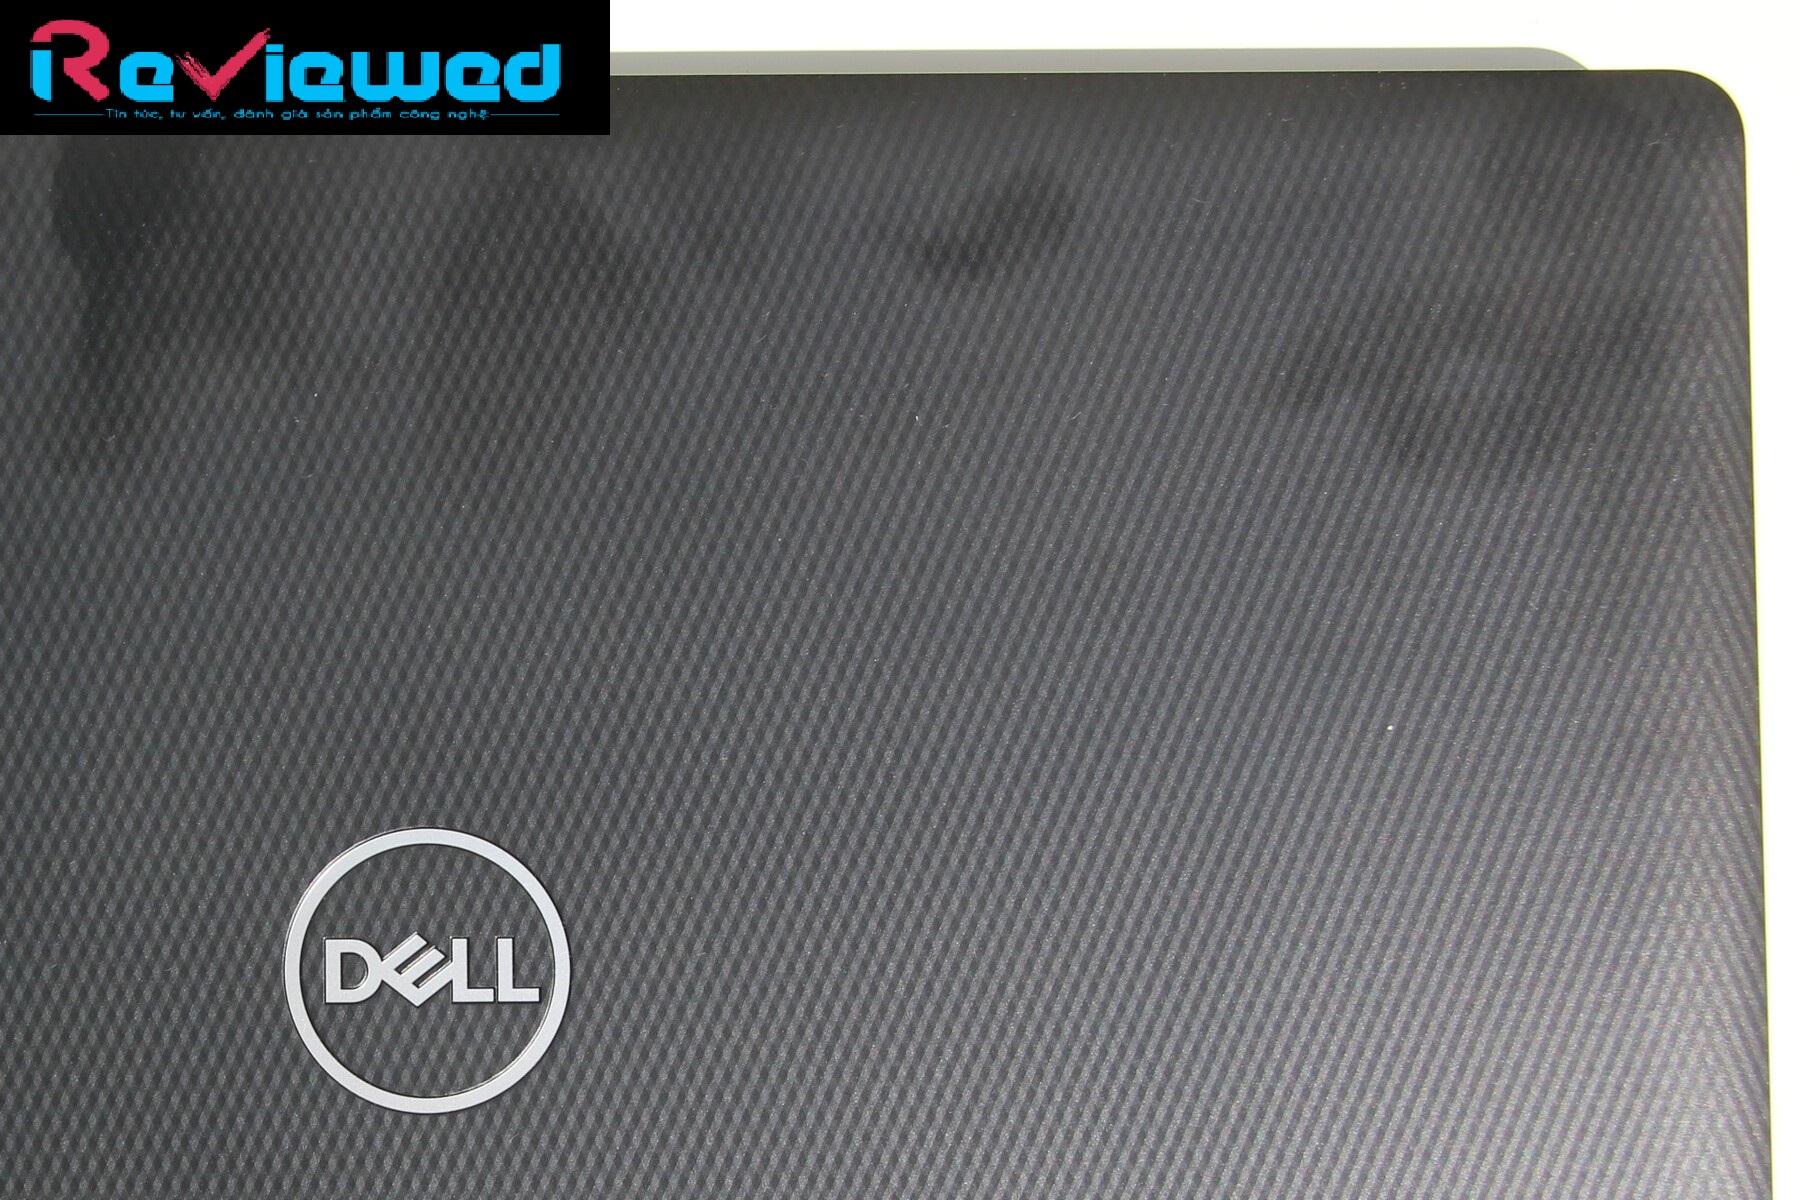 Đánh giá Dell Inspiron 15 3585: Hiệu năng chỉ giới hạn ở các tác vụ văn phòng, Chuyên trang tư vấn về laptop